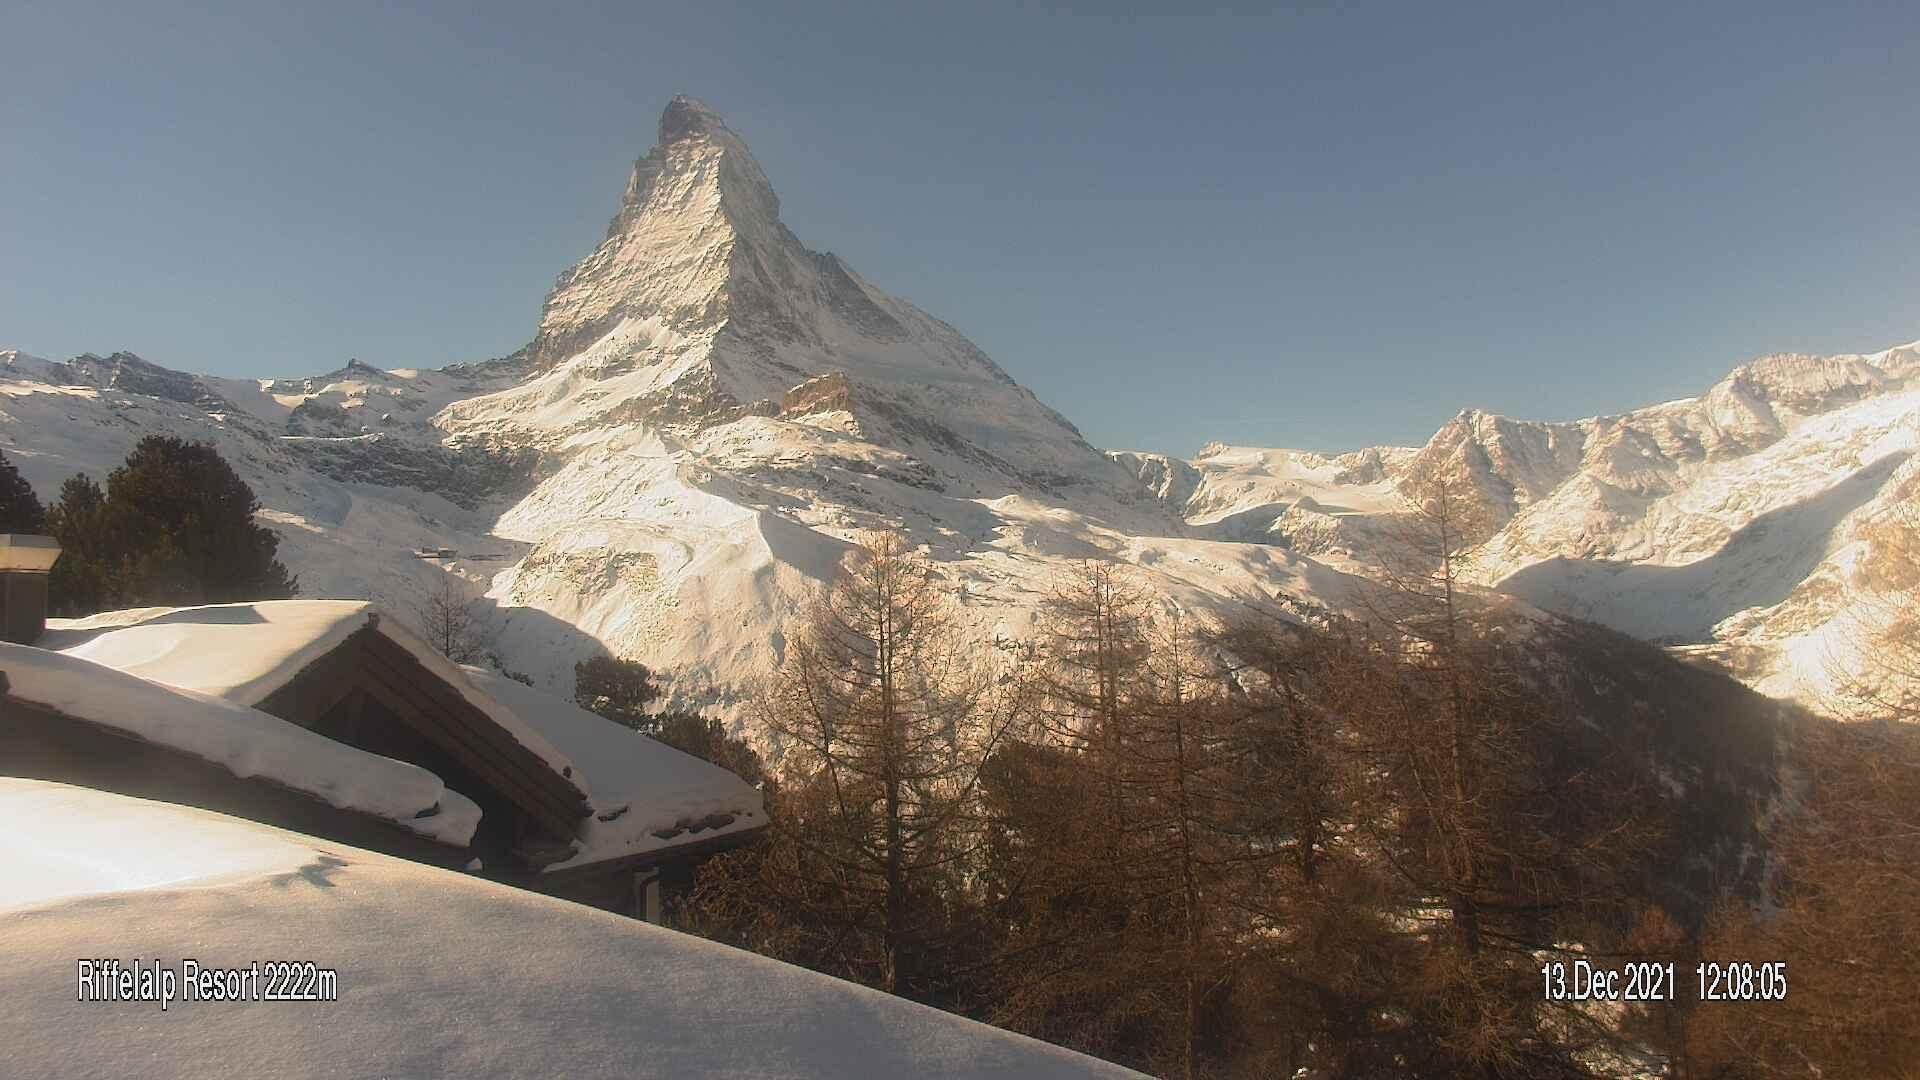 A sun-drenched Zermatt today (riffelalp.com)